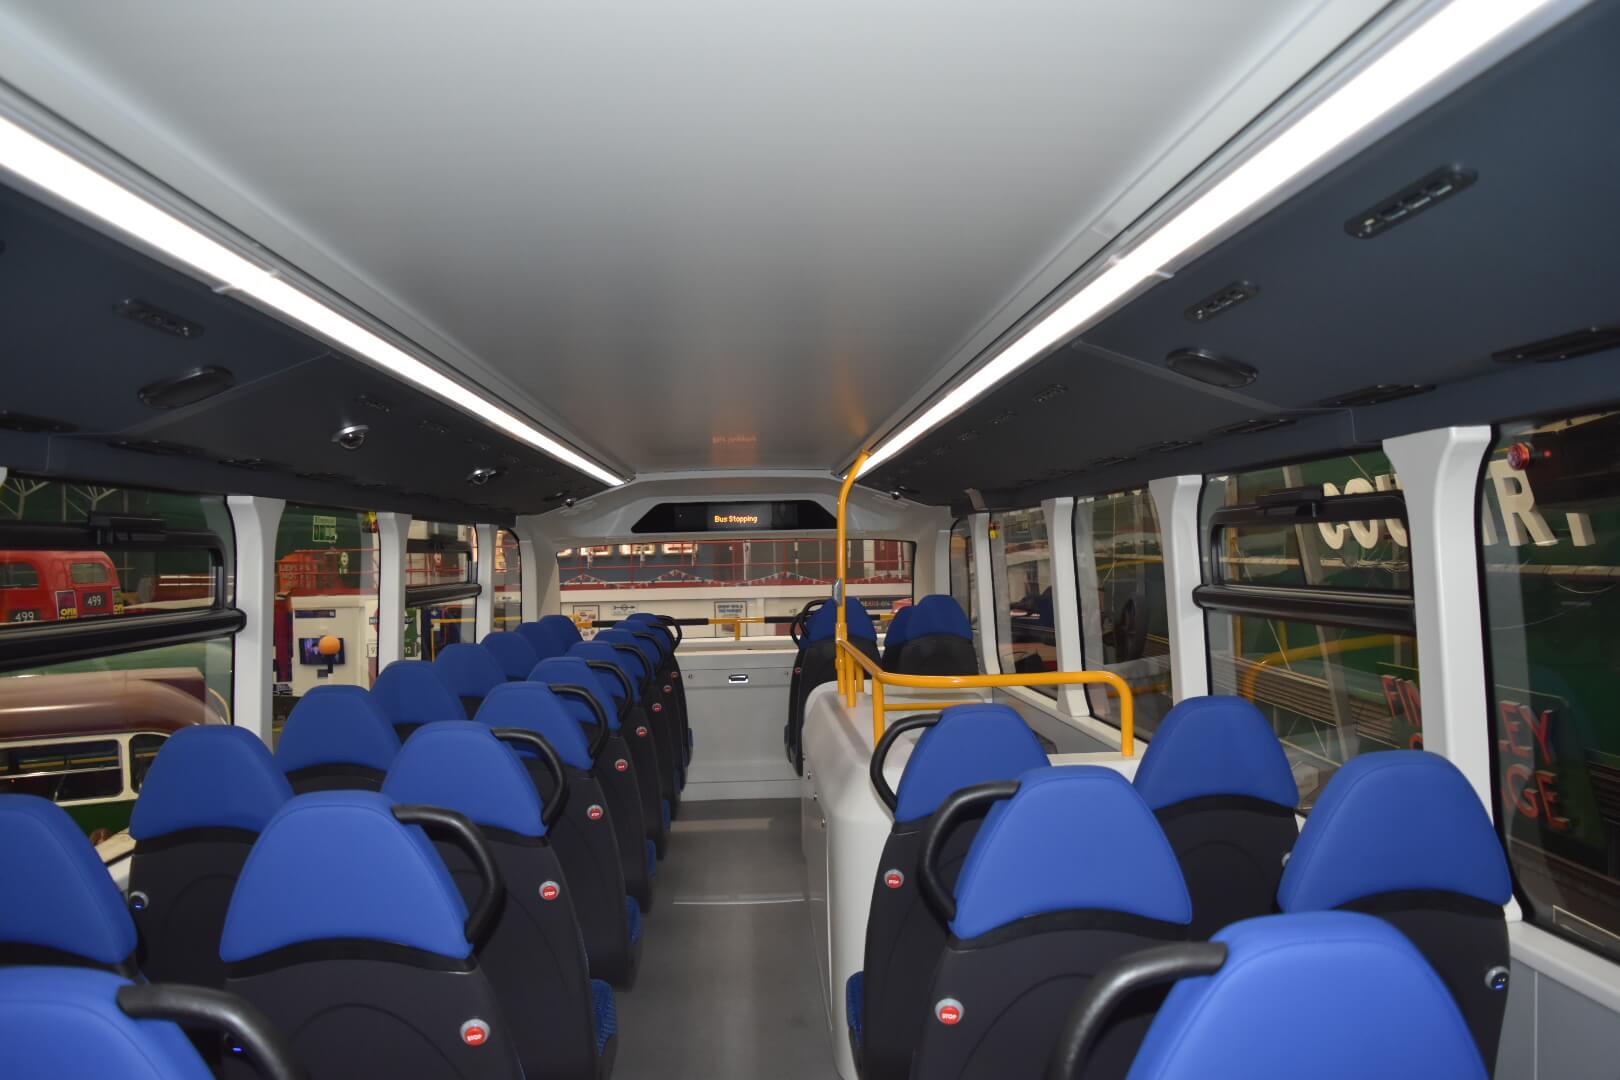 Автобус BYD с аккумулятором мощностью 532 кВтч может стать следующим лондонским красным автобусом